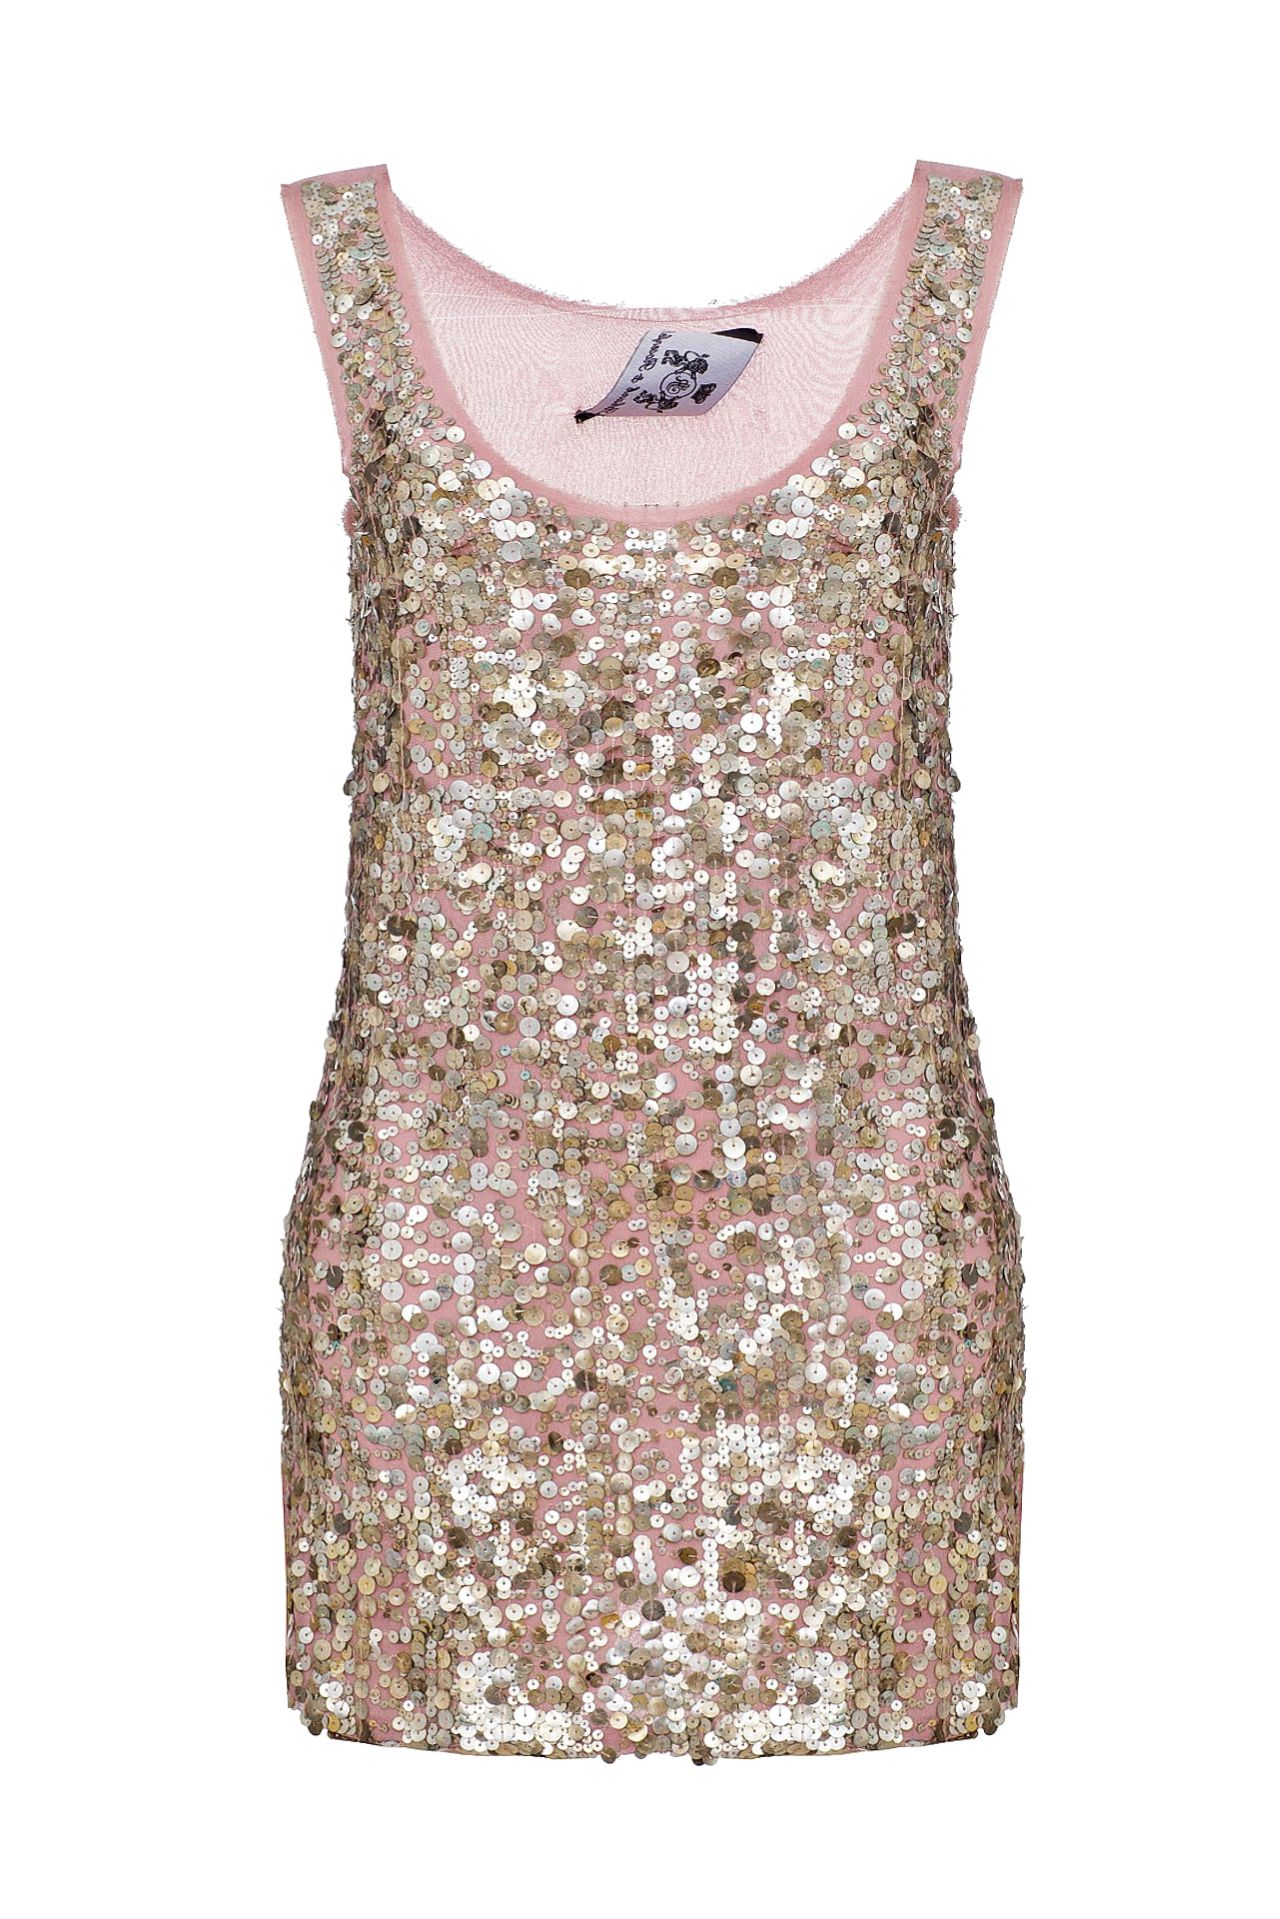 Одежда женская Платье ROSENFELD (T-30/11.2). Купить за 9250 руб.